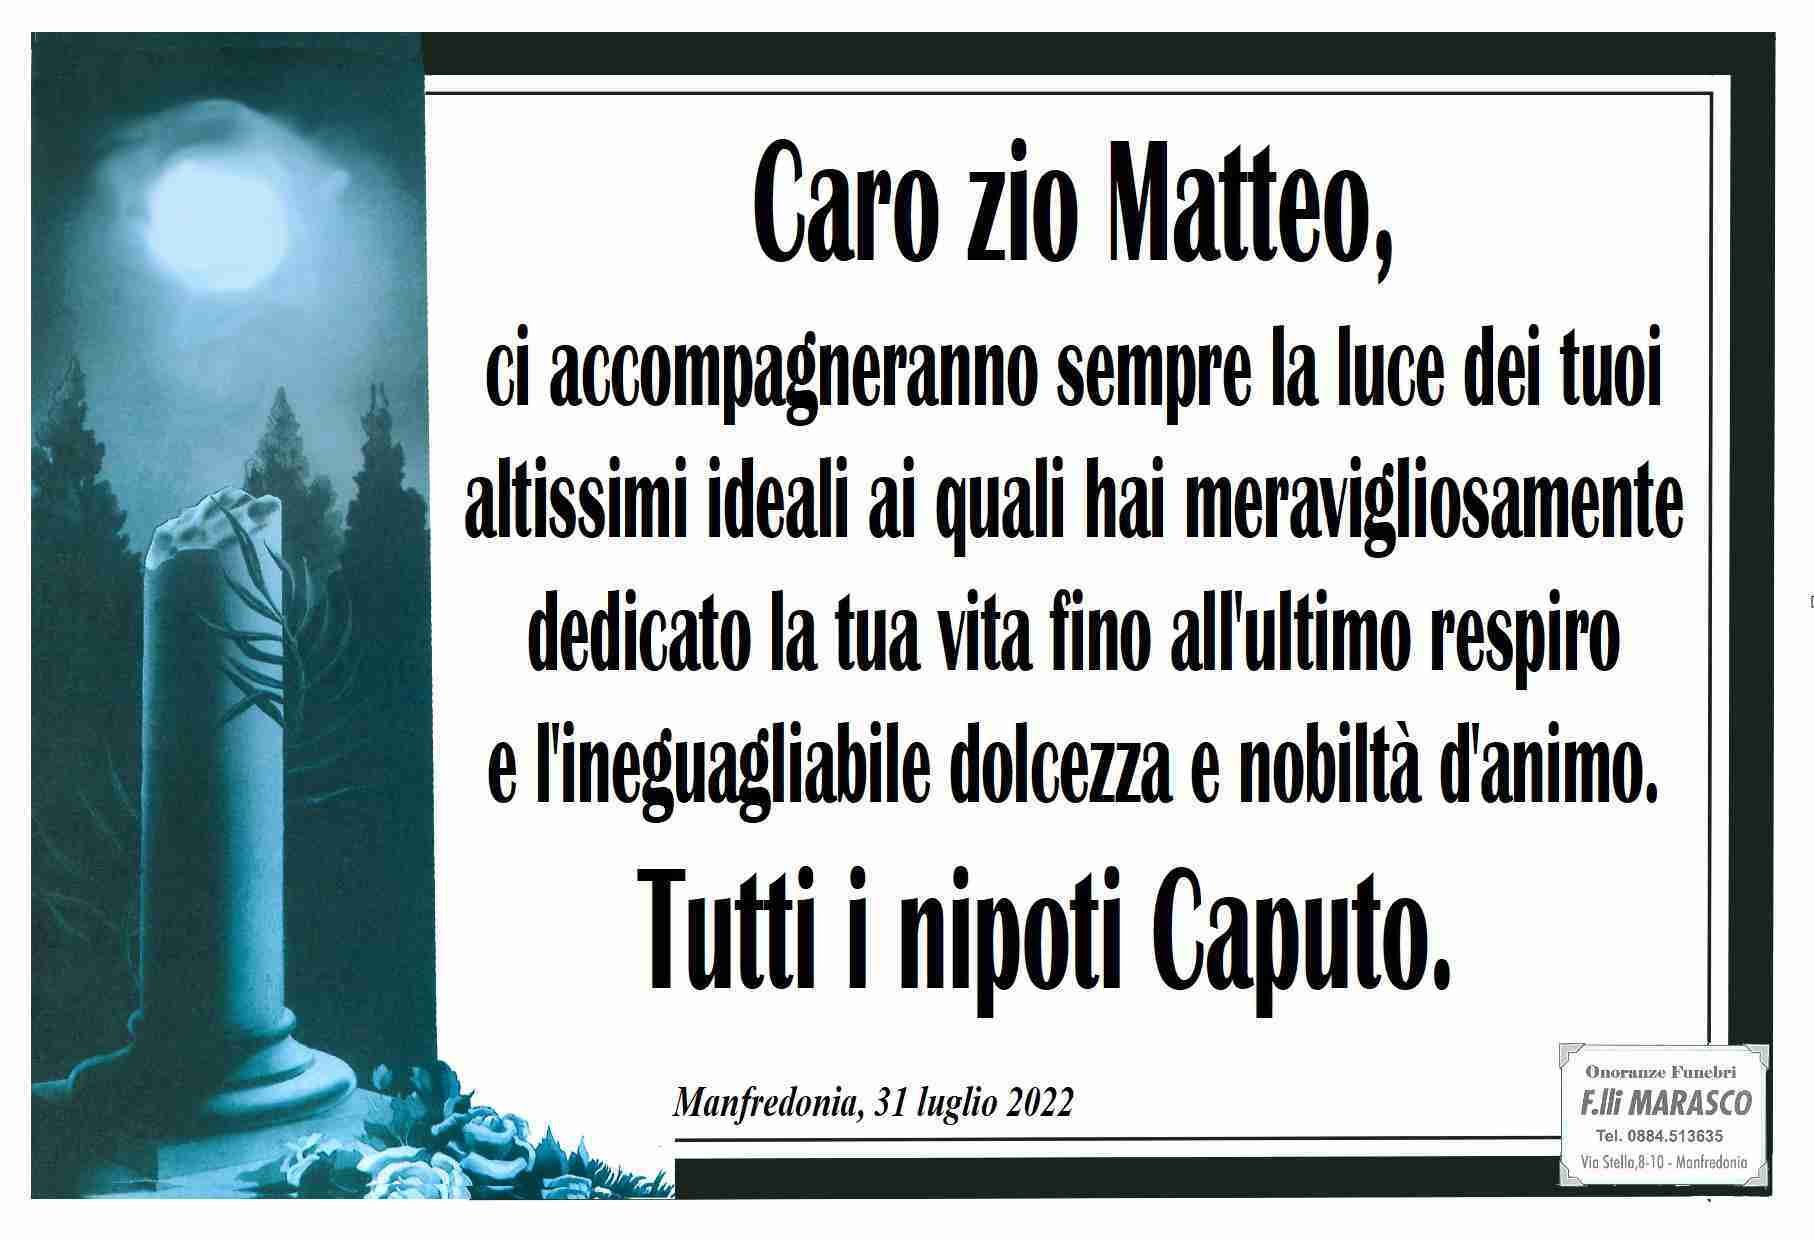 Matteo Caputo